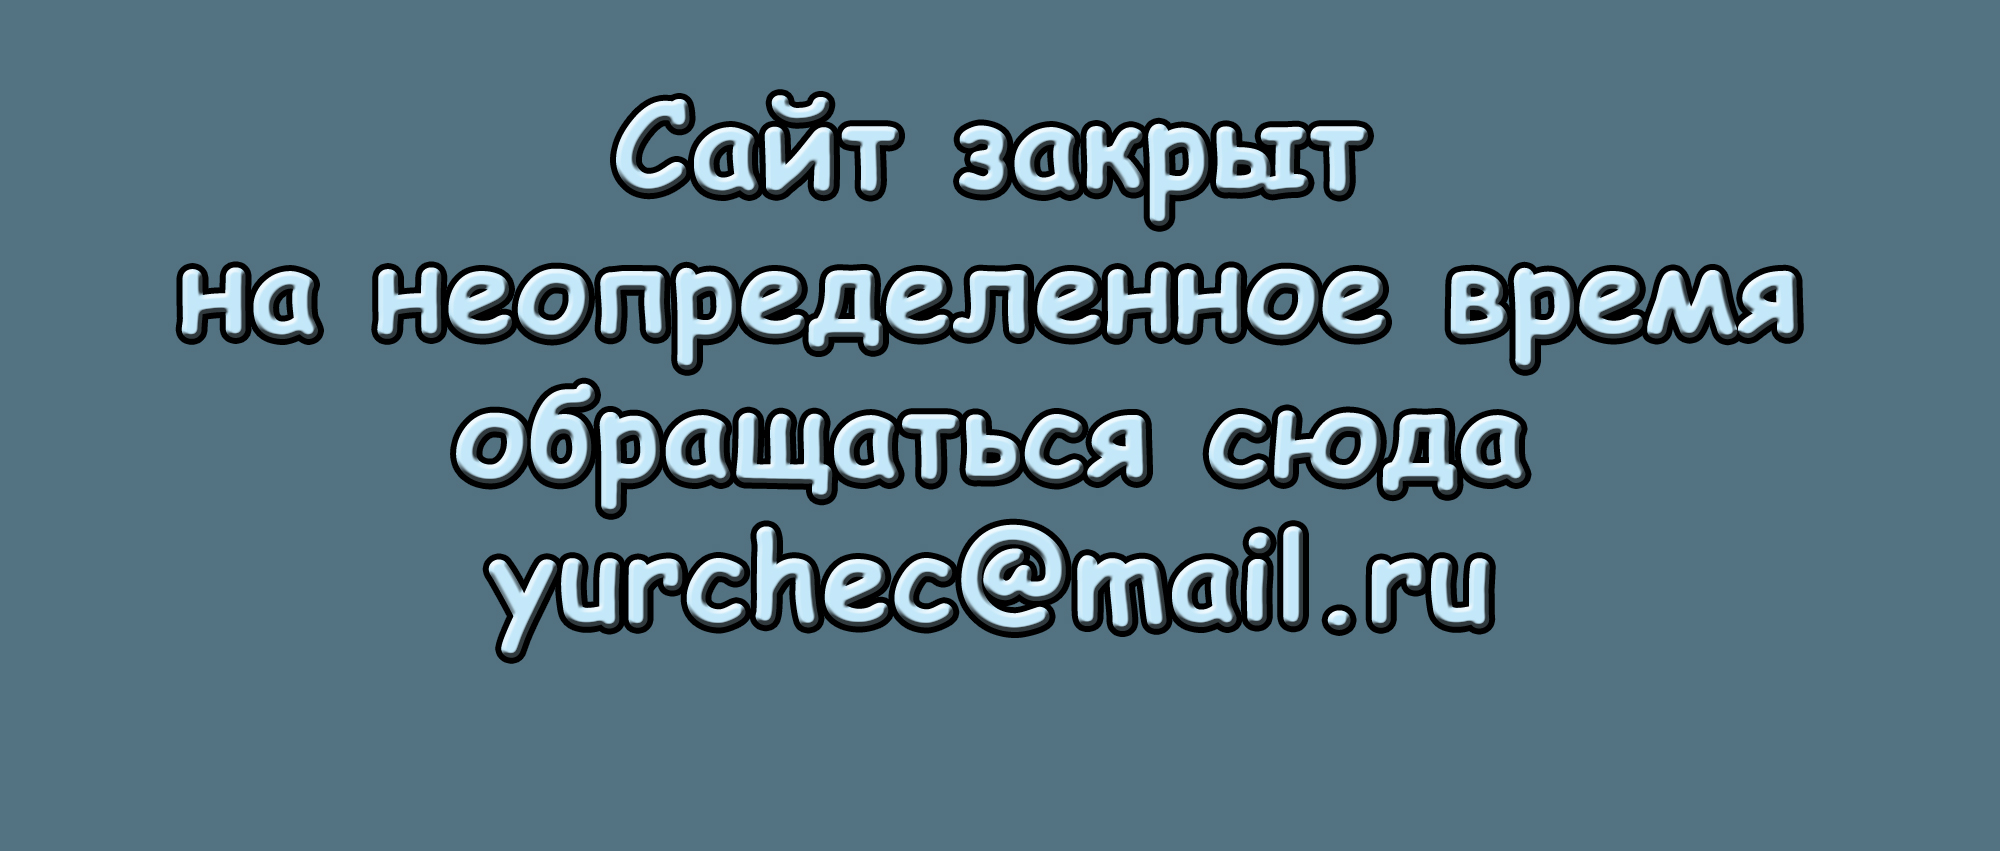      yurchec@mail.ru